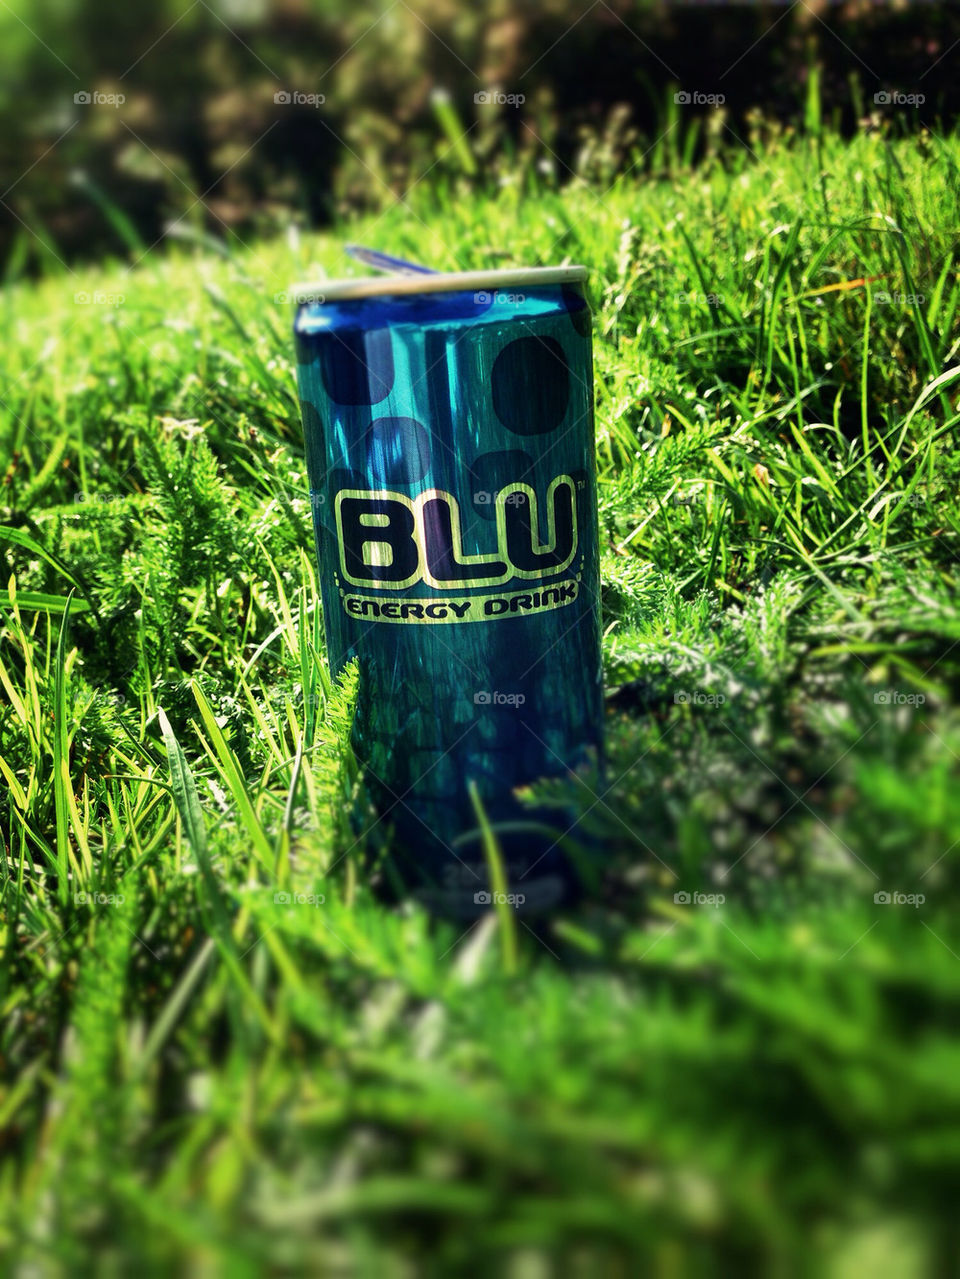 Blu energy drink